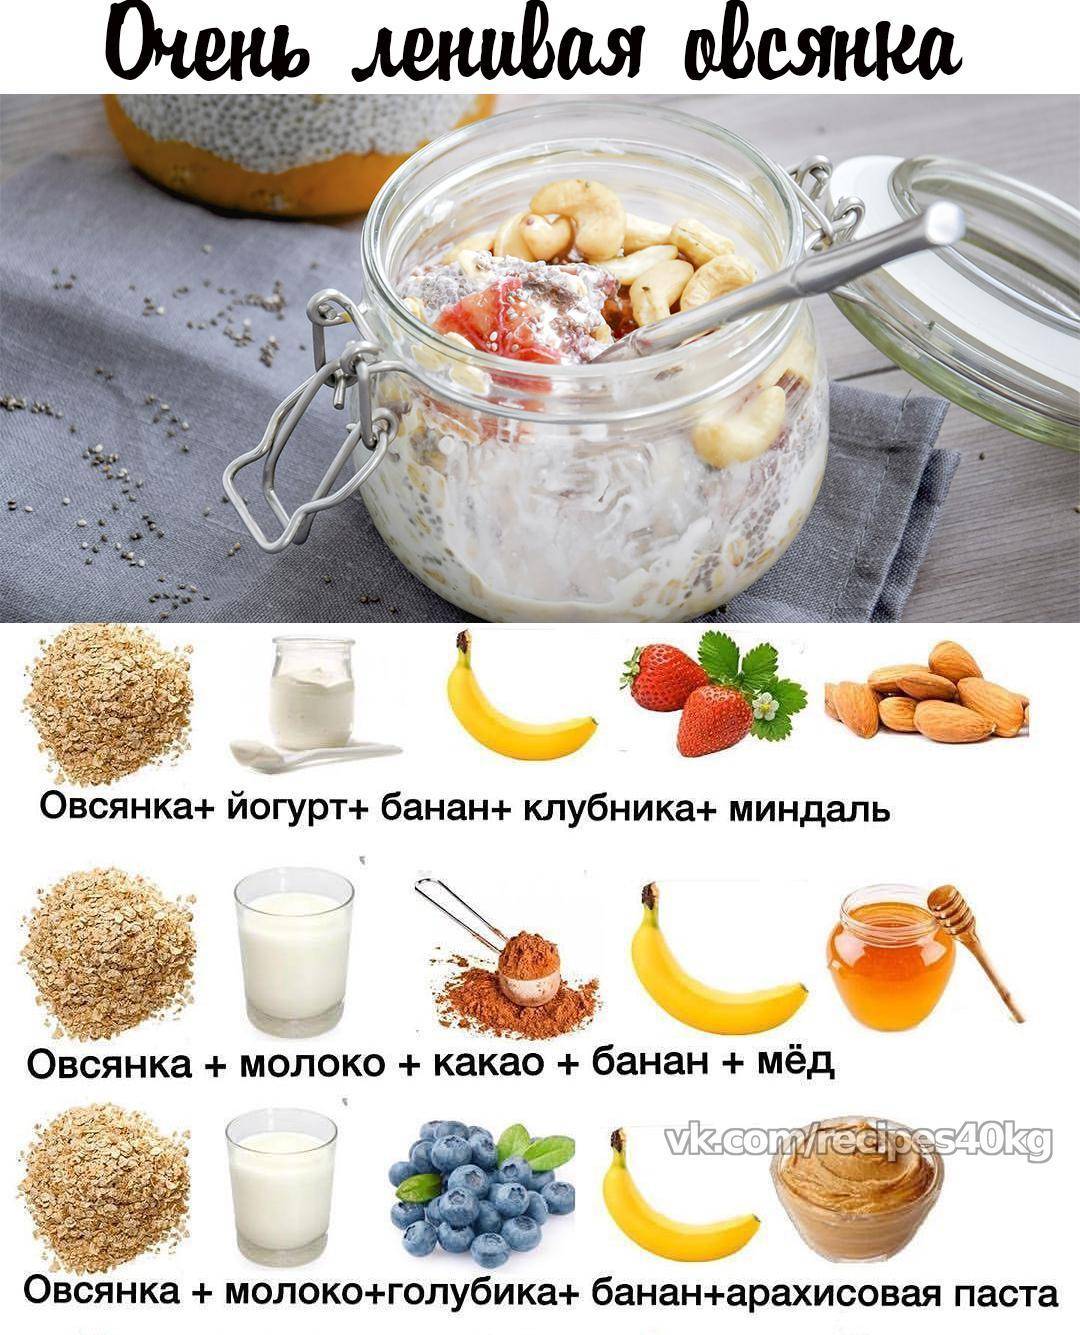 Завтрак для похудения: рецепты идеально правильного, здорового и диетического питания - овсянка, гречка, бутерброды, смузи, белковые блюда